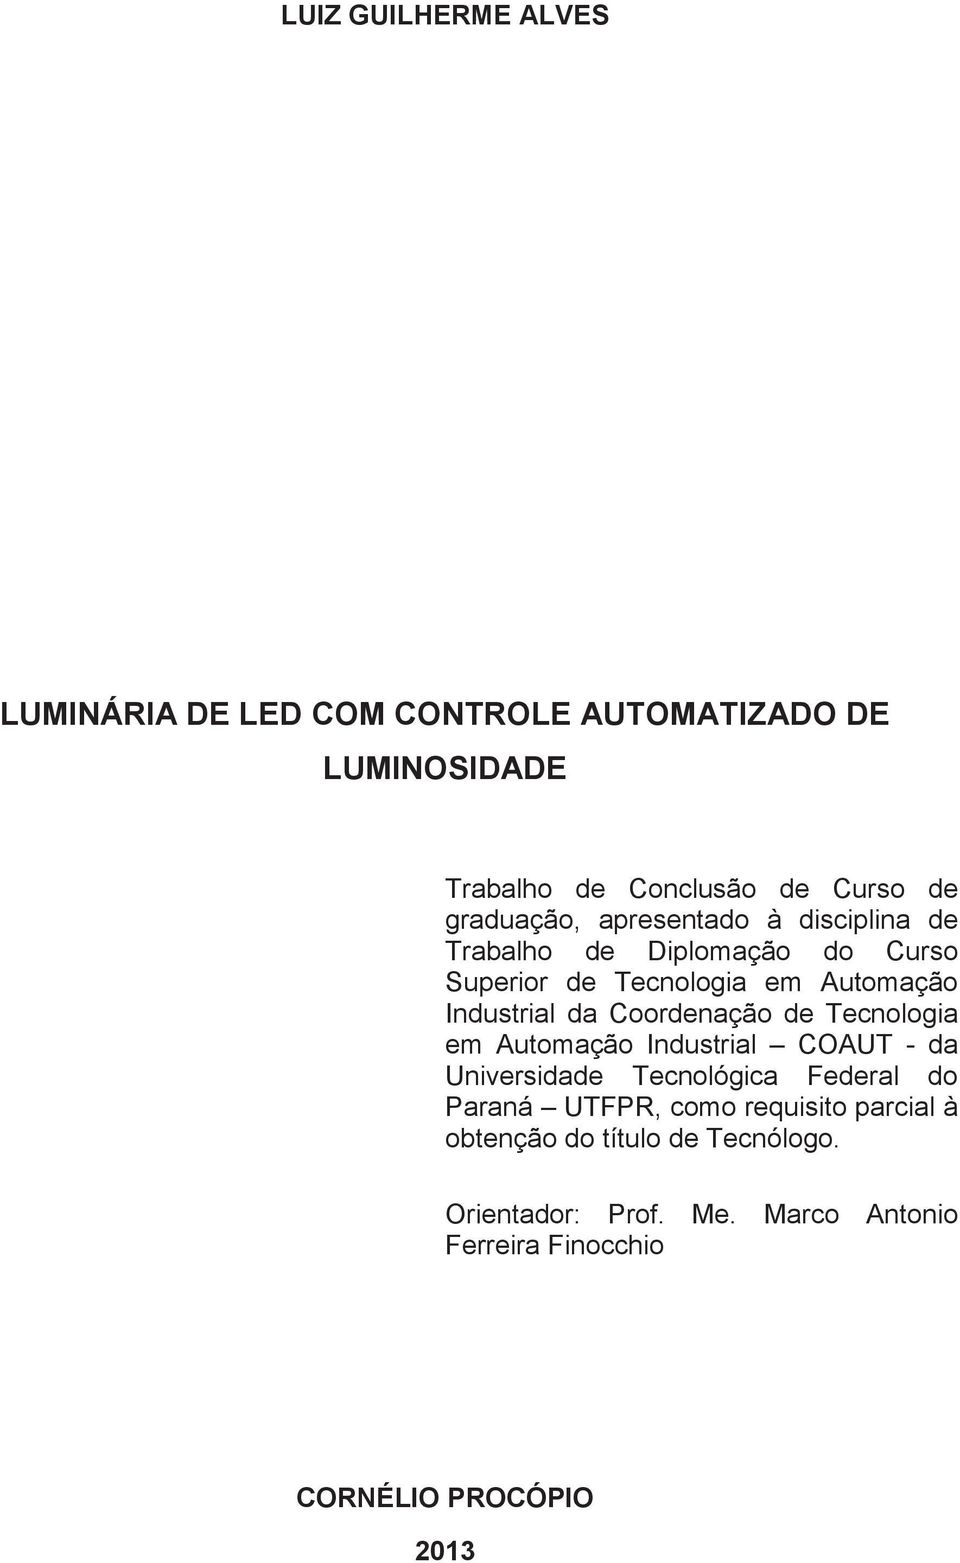 Coordenação de Tecnologia em Automação Industrial COAUT - da Universidade Tecnológica Federal do Paraná UTFPR, como